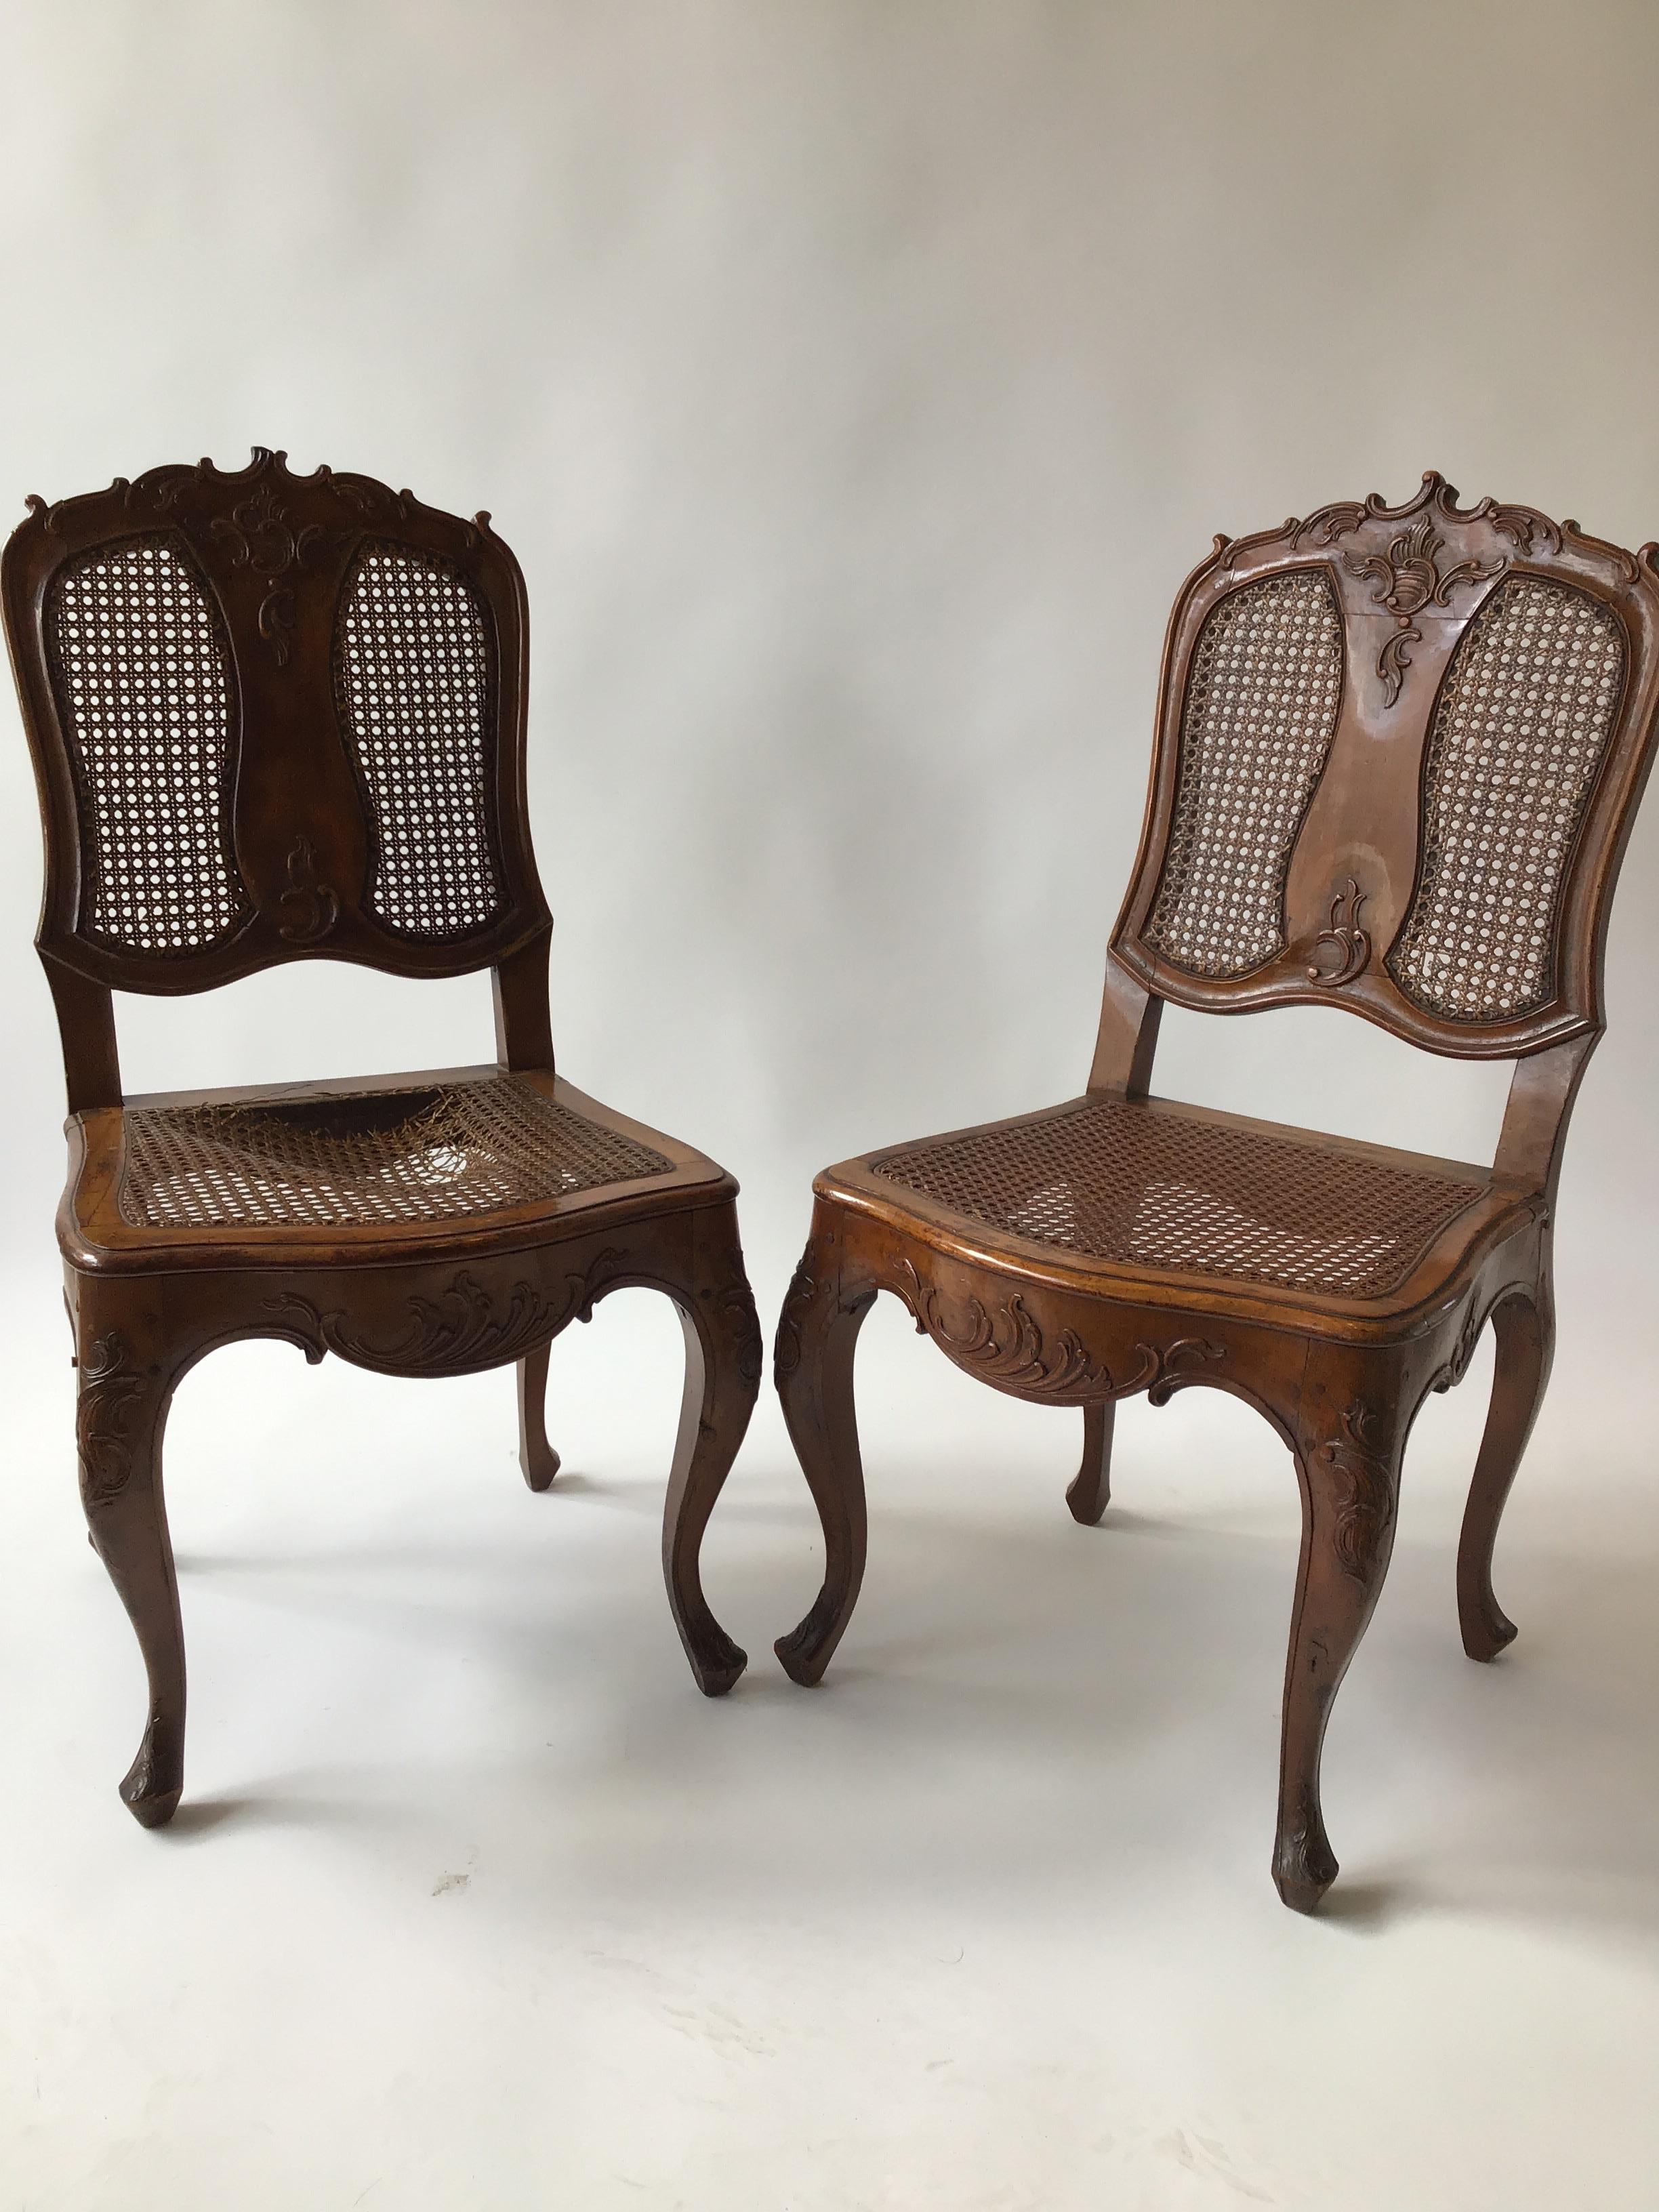 Paar französische, handgeschnitzte Beistellstühle aus den 1880er Jahren.